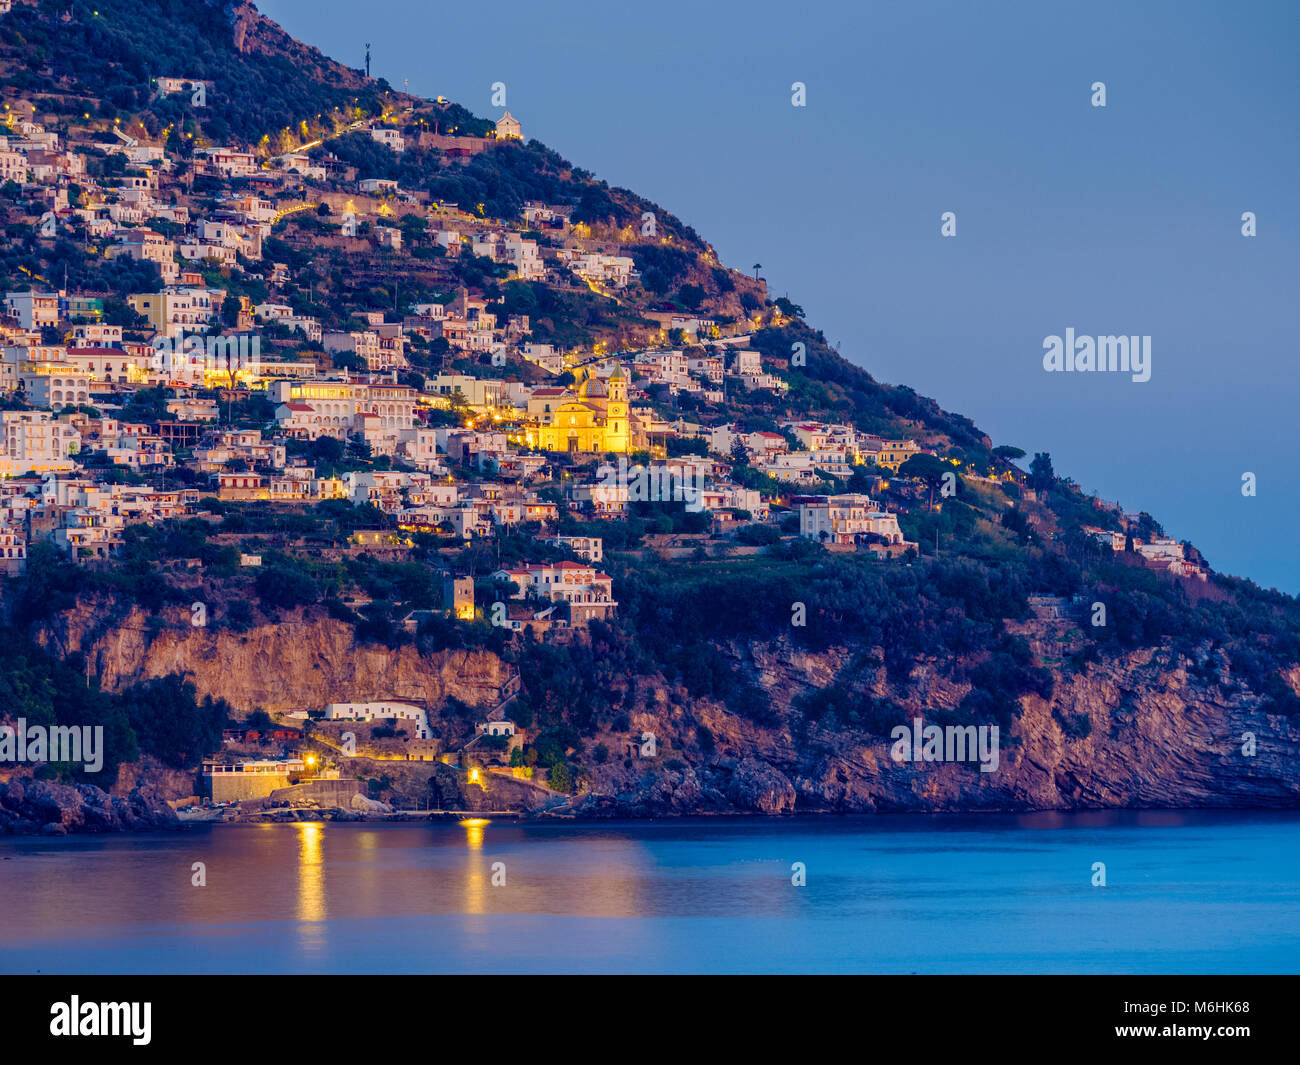 Town of Vettica Maggiore on Amalfi coast, Italy Stock Photo - Alamy